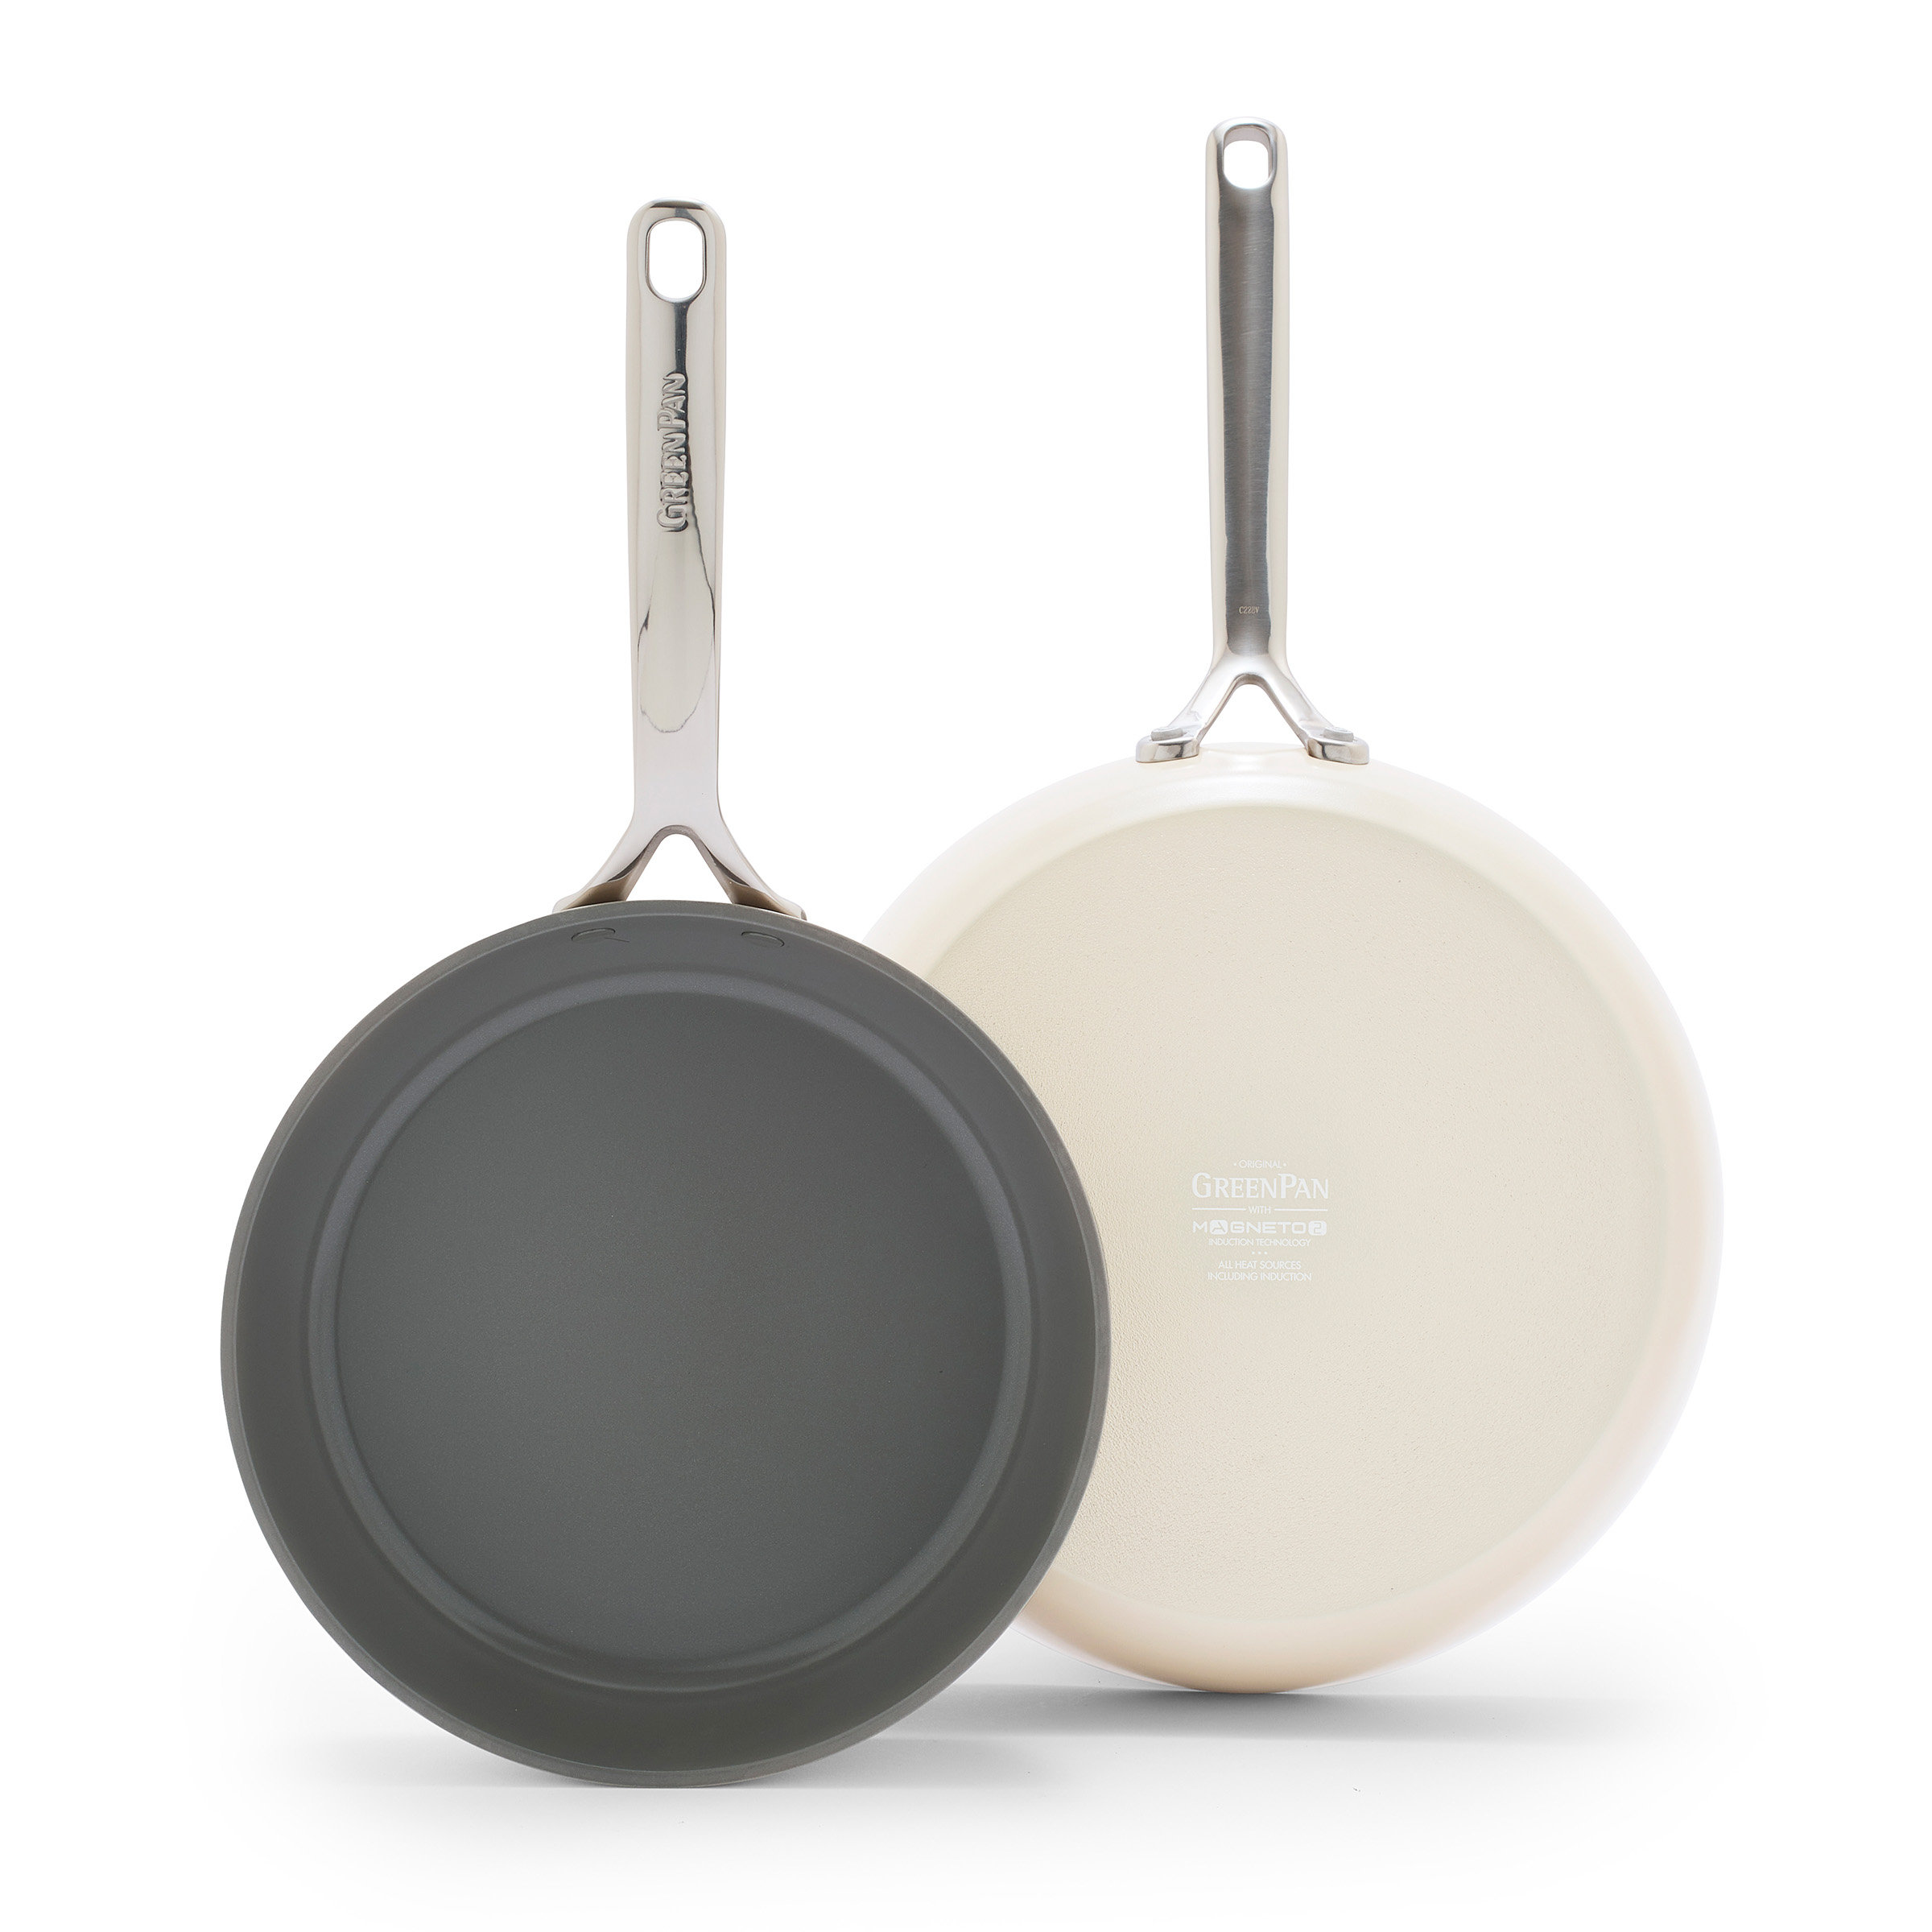 GP5 Colors Ceramic Nonstick 11-Piece Cookware Set | Slate